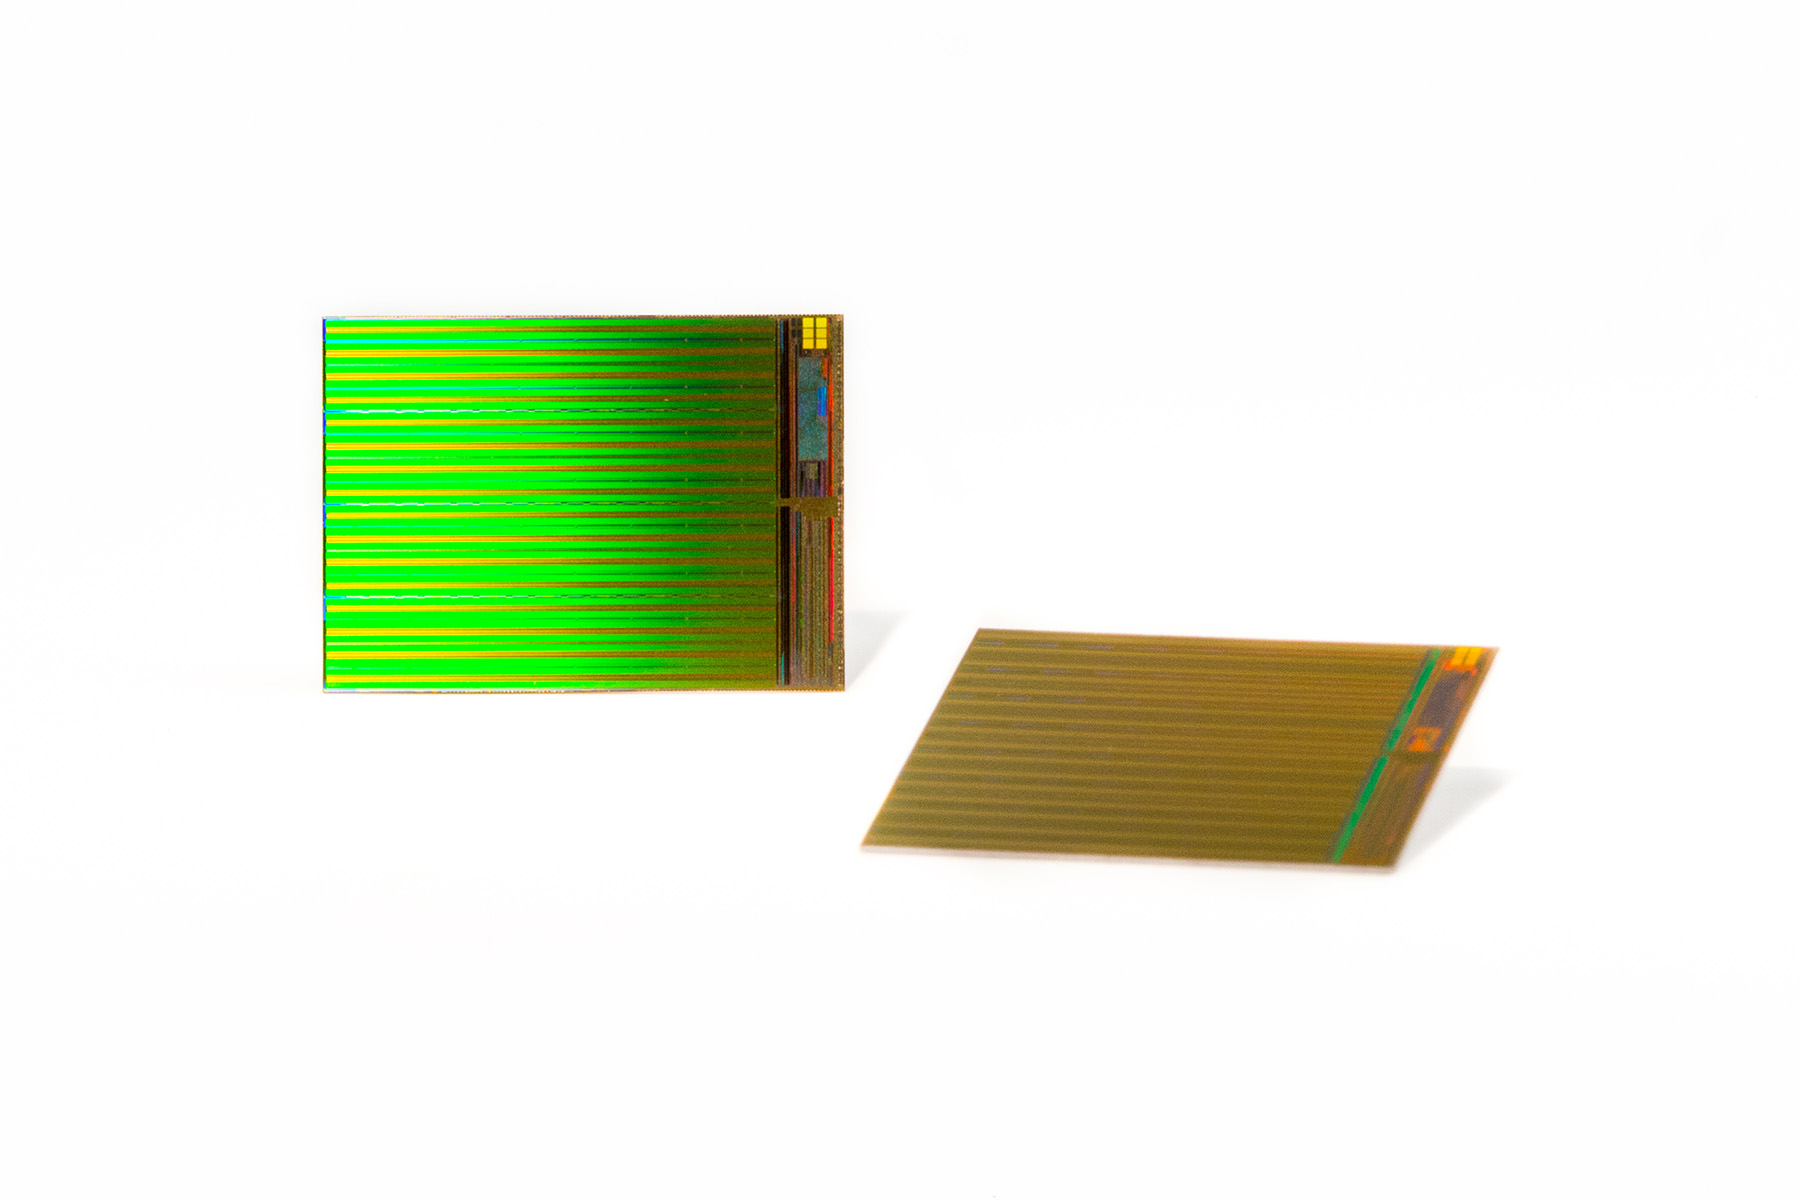 Immagine pubblicata in relazione al seguente contenuto: Intel e Micron promettono SSD meno costosi con i chip 3D NAND | Nome immagine: news22397_Intel-Micron-3D-DIE_1.jpg